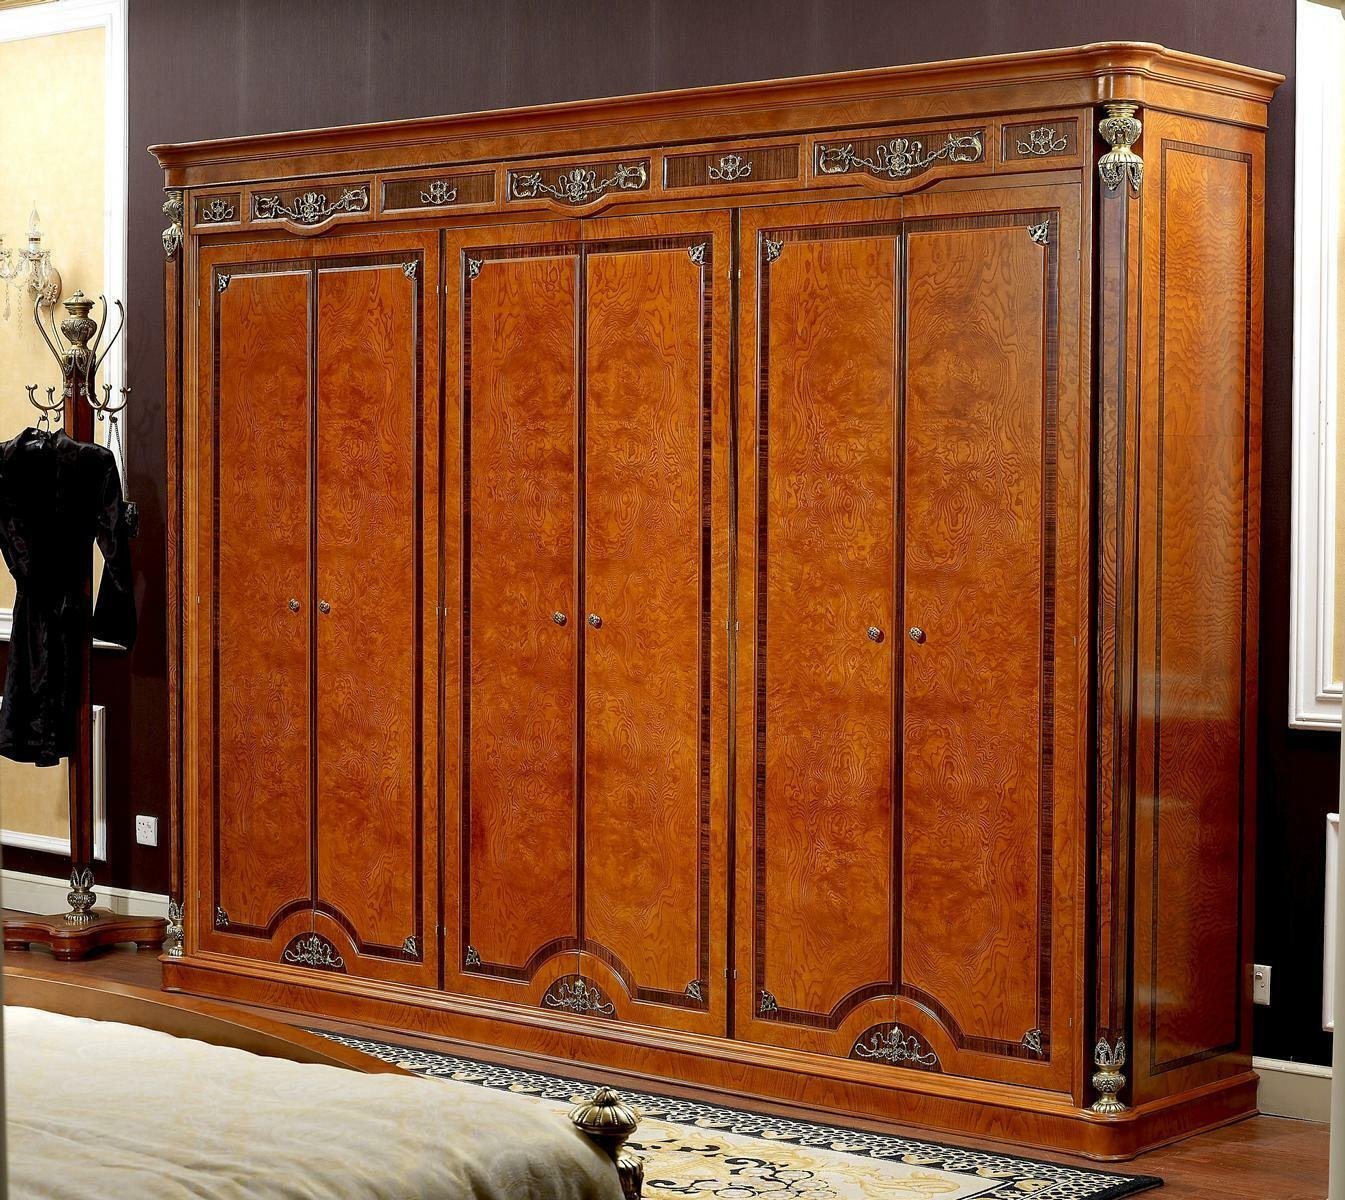 JVmoebel Kleiderschrank XXL BIG Kleiderschrank 6 Türen Antik Stil Barock Rokoko Holz von JVmoebel